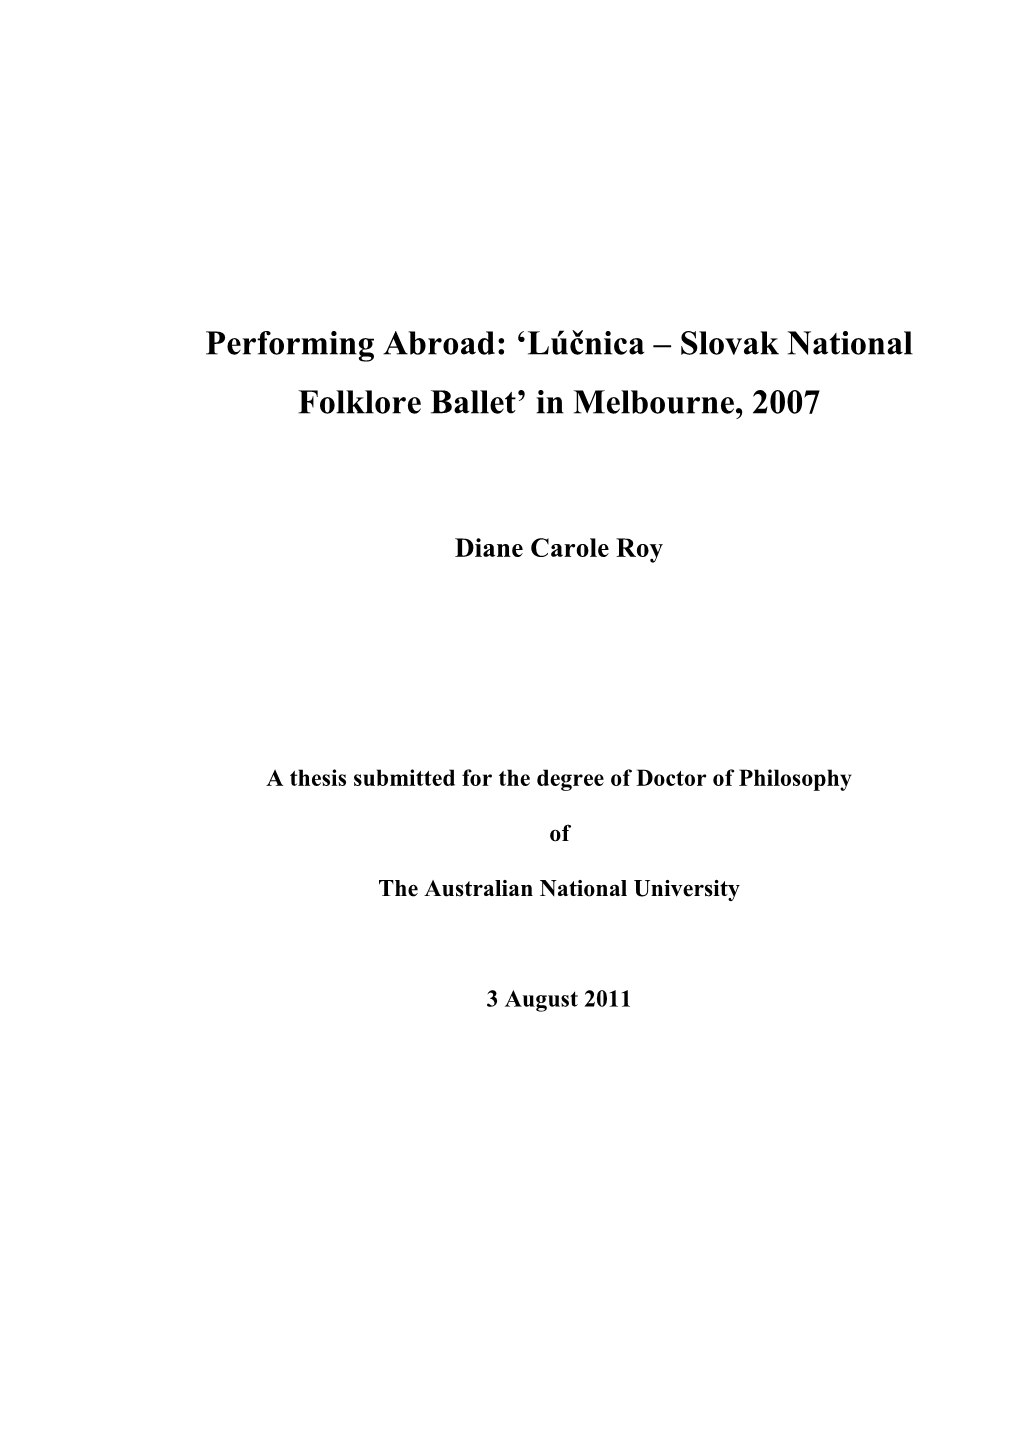 'Lúčnica – Slovak National Folklore Ballet' in Melbourne, 2007